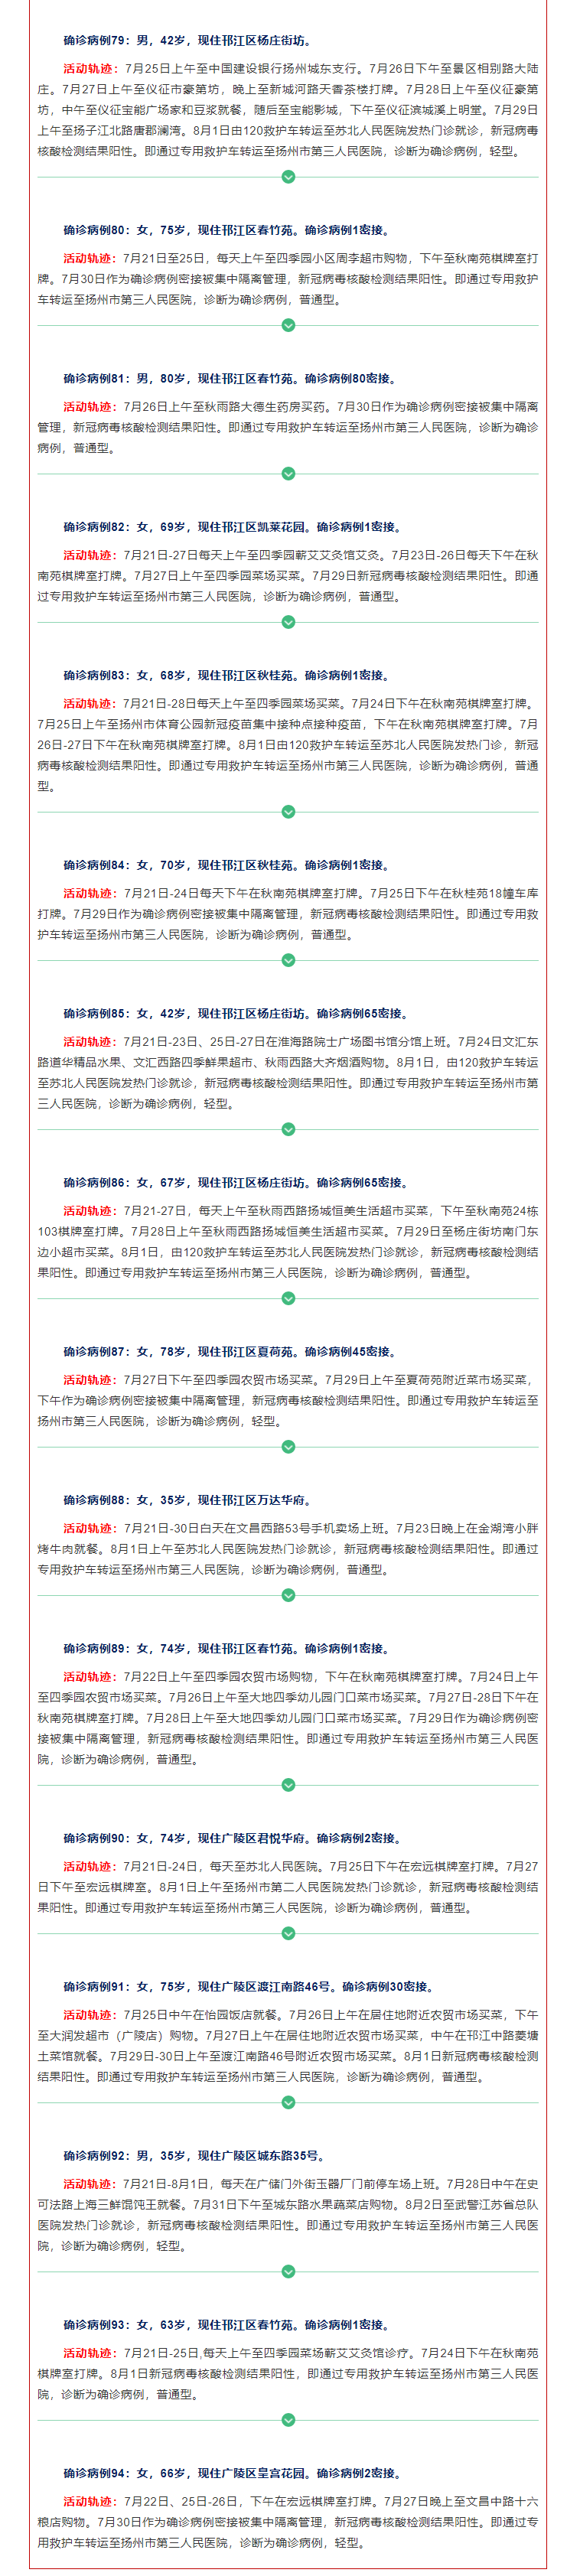 扬州新增40例确诊病例 大部分与棋牌室有关